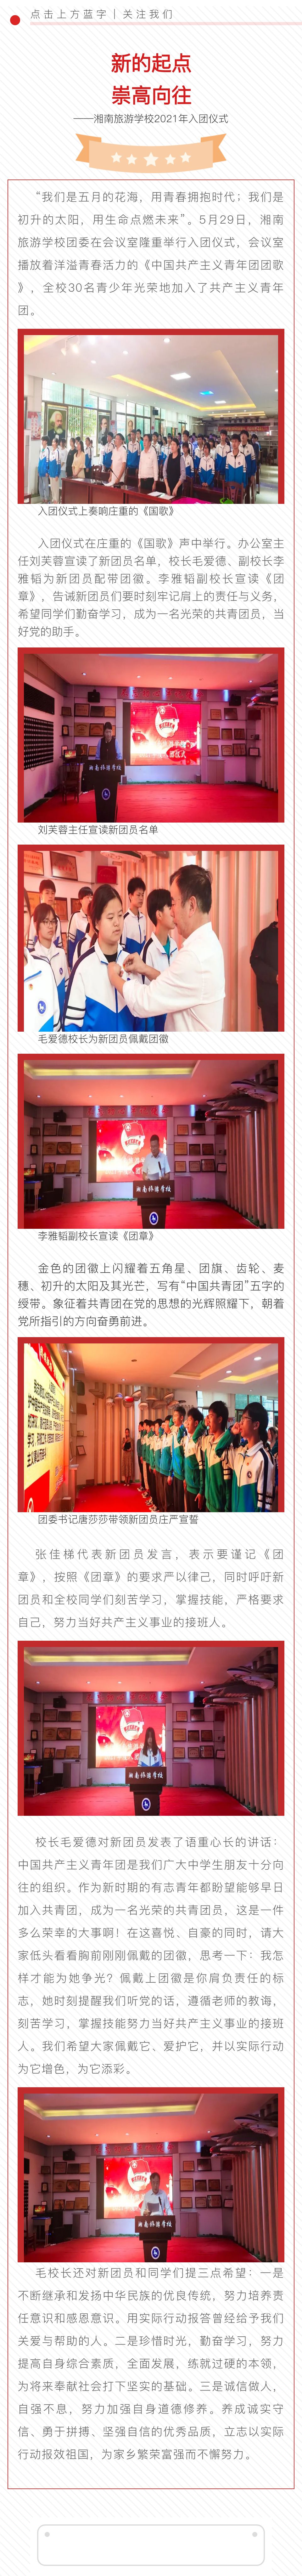 新的起点 崇高向往——湘南旅游学校2021年入团仪式